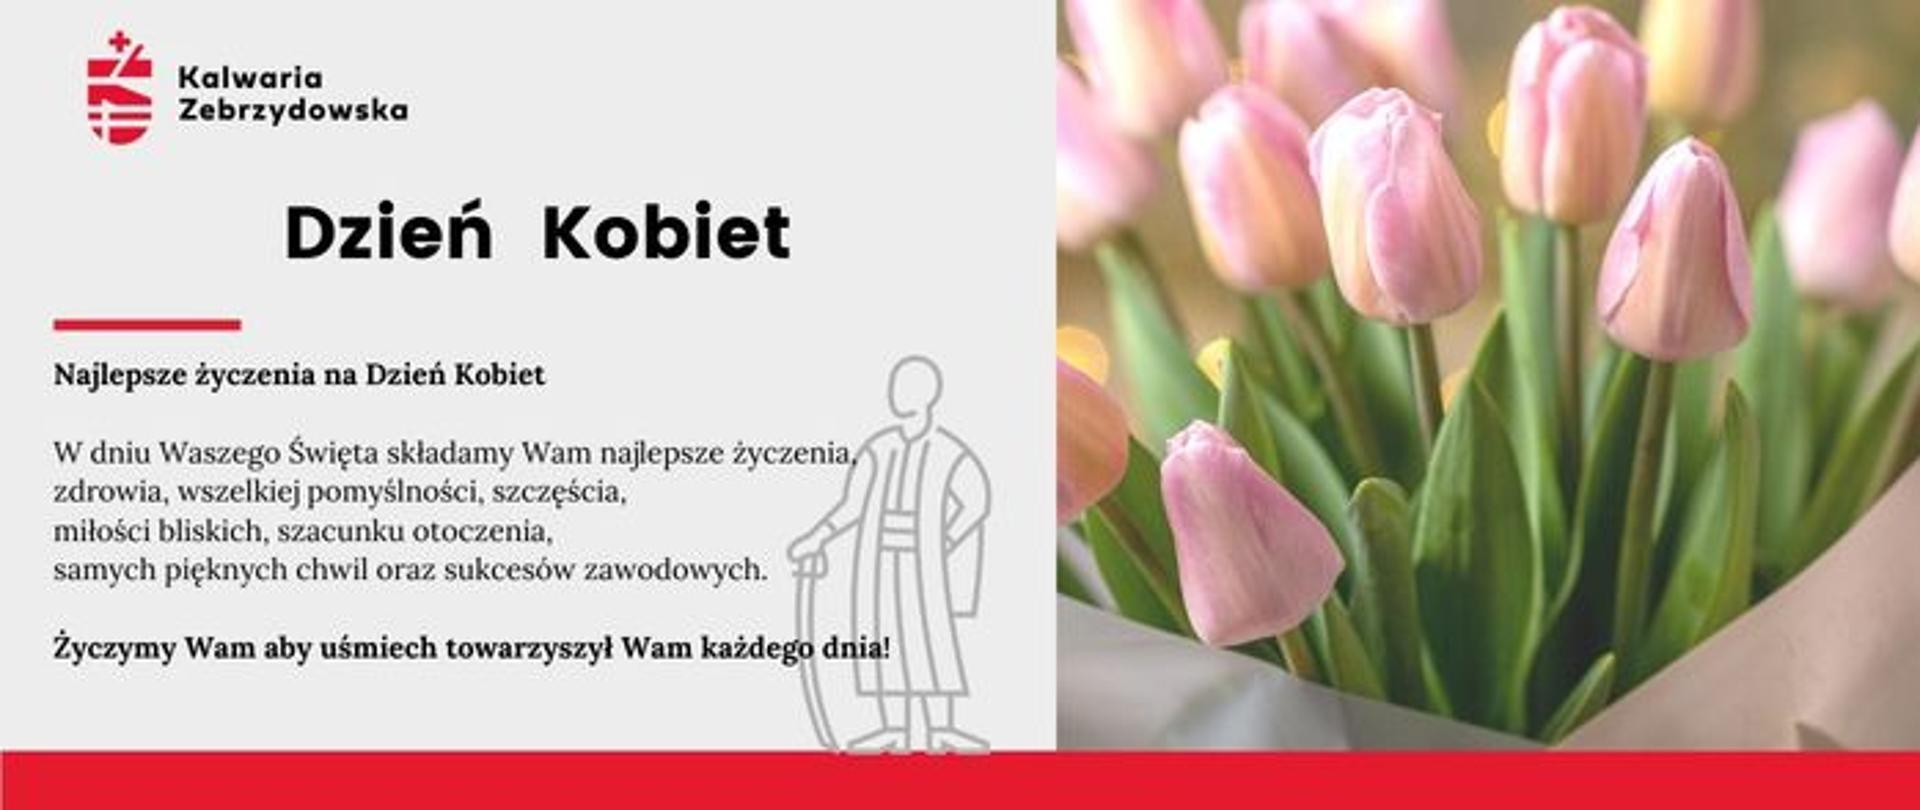 Ilustracja - Dzień Kobiet, po prawej bukiet tulipanów , po lewej tekst z życzeniami. 